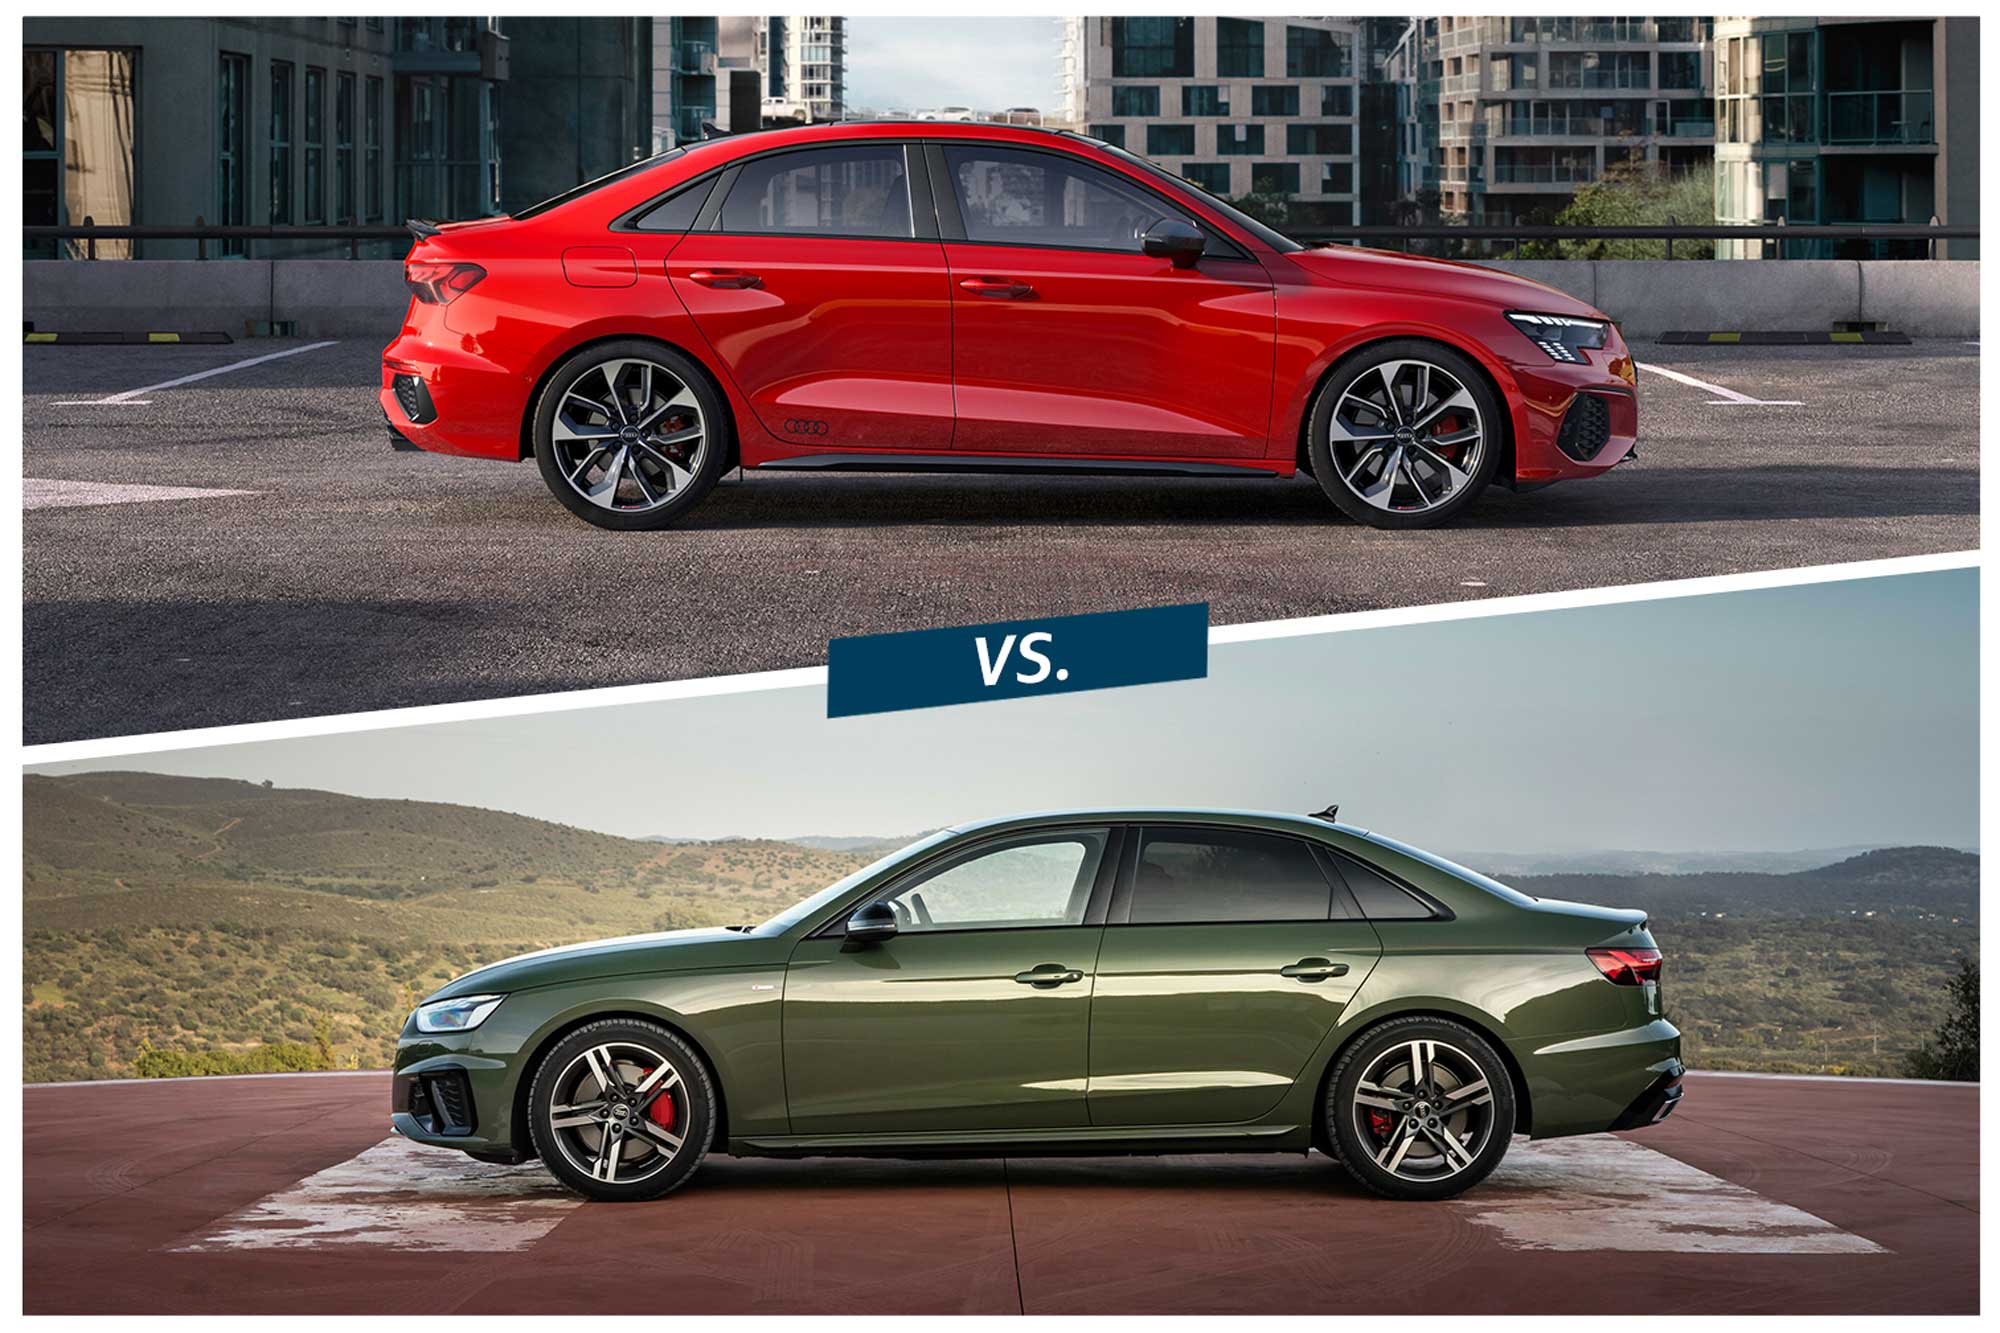 Red 2022 Audi A3 vs. green Audi A4